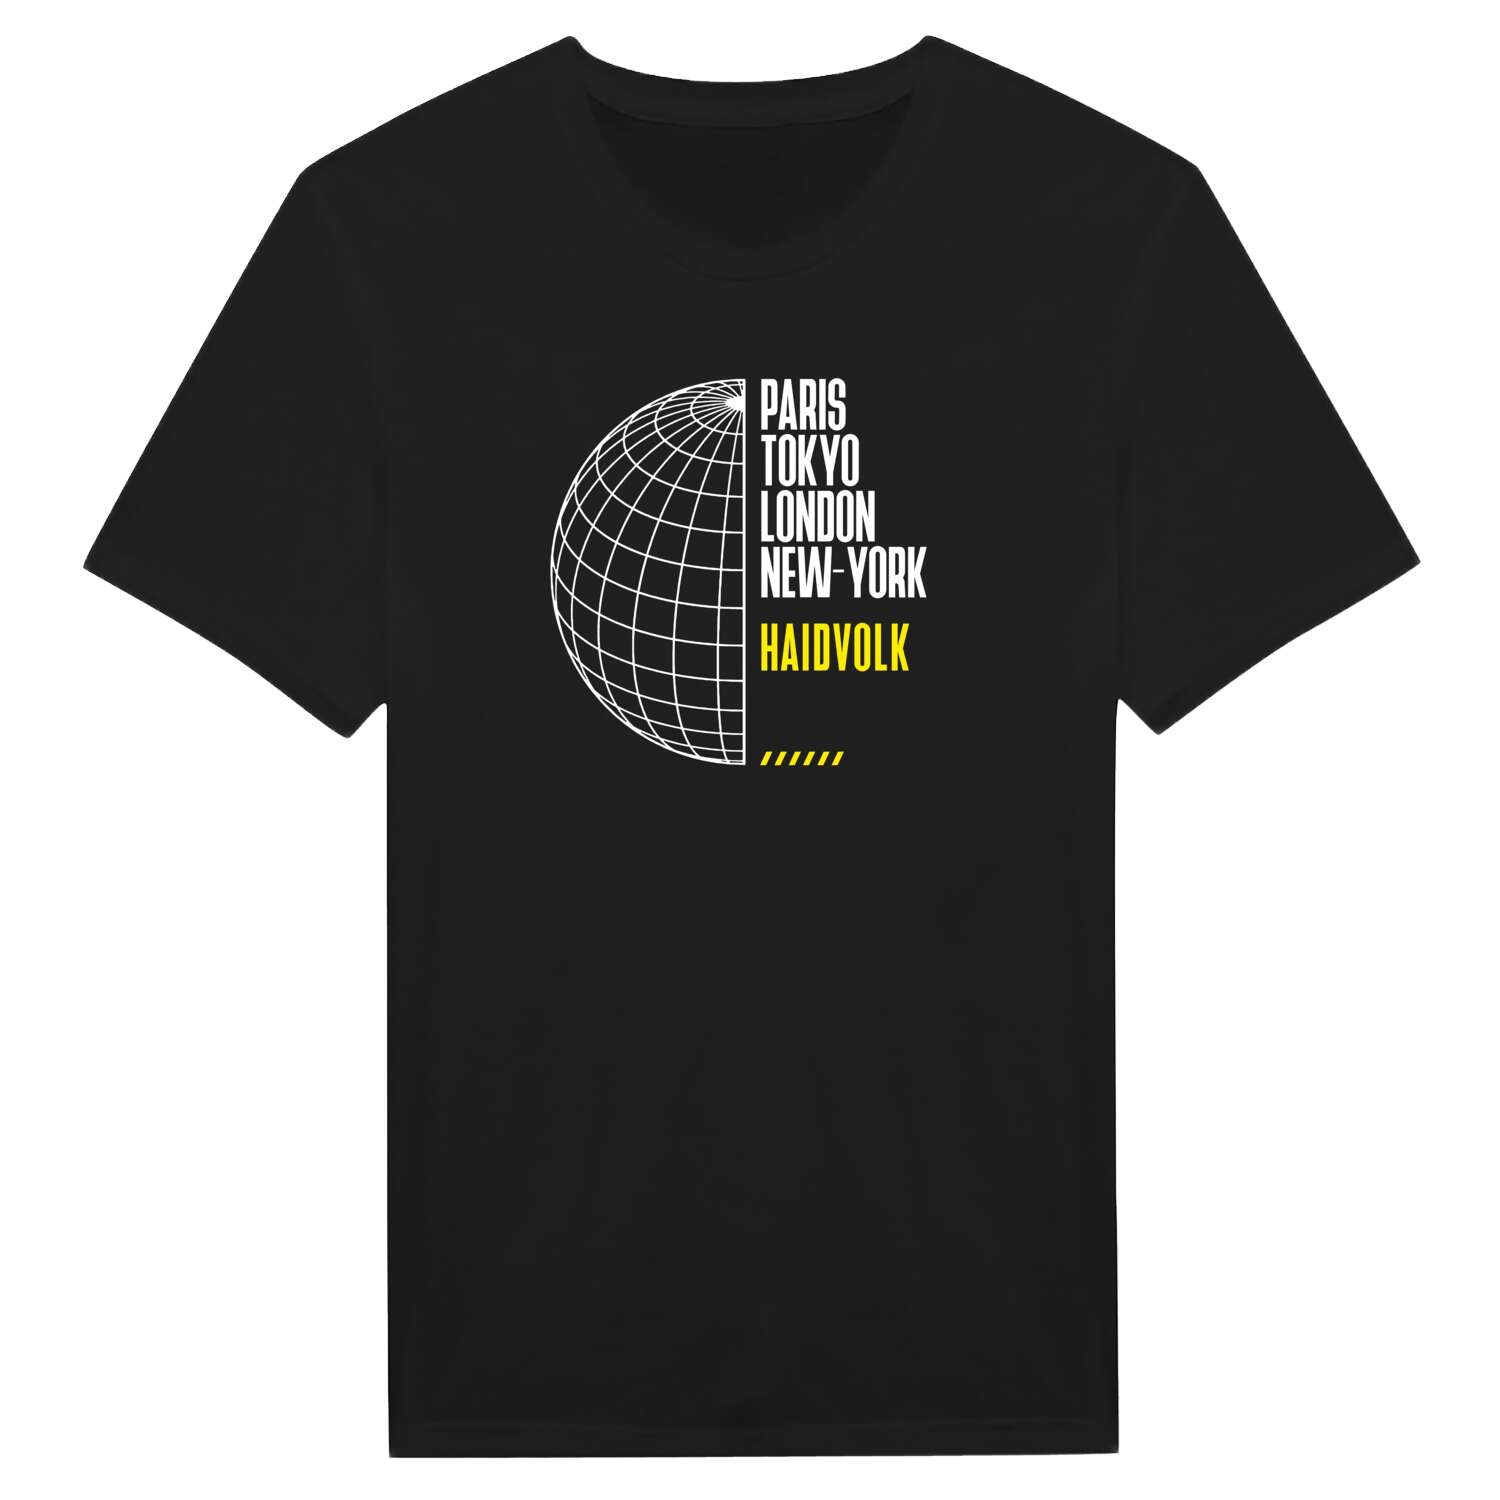 Haidvolk T-Shirt »Paris Tokyo London«